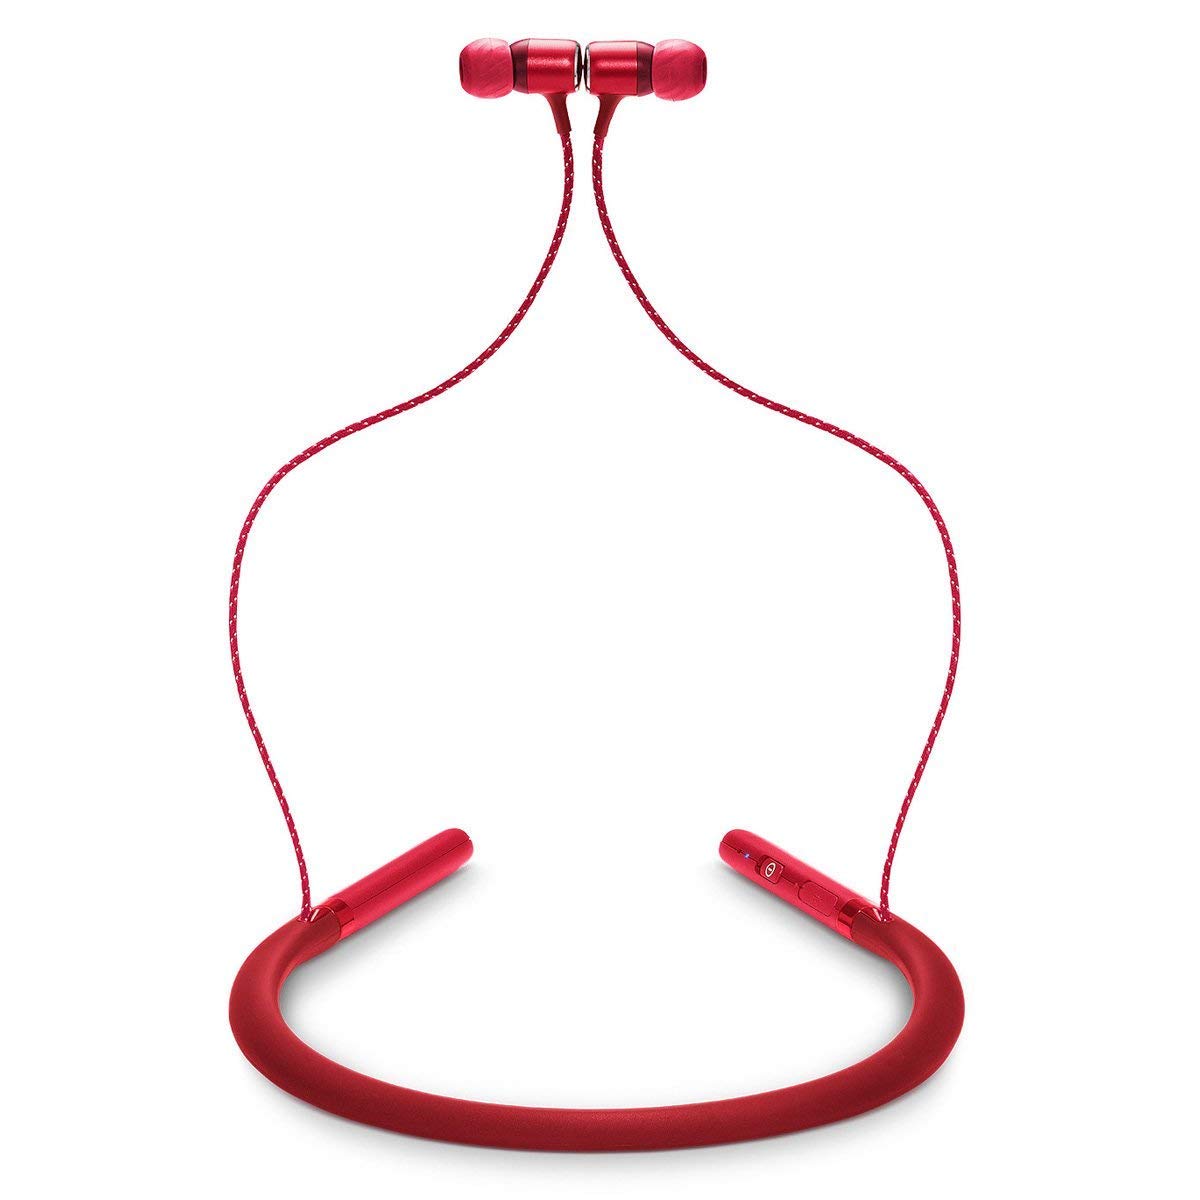 https://caserace.net/products/jbl-live-200-bt-wireless-in-ear-neckband-headphones-red